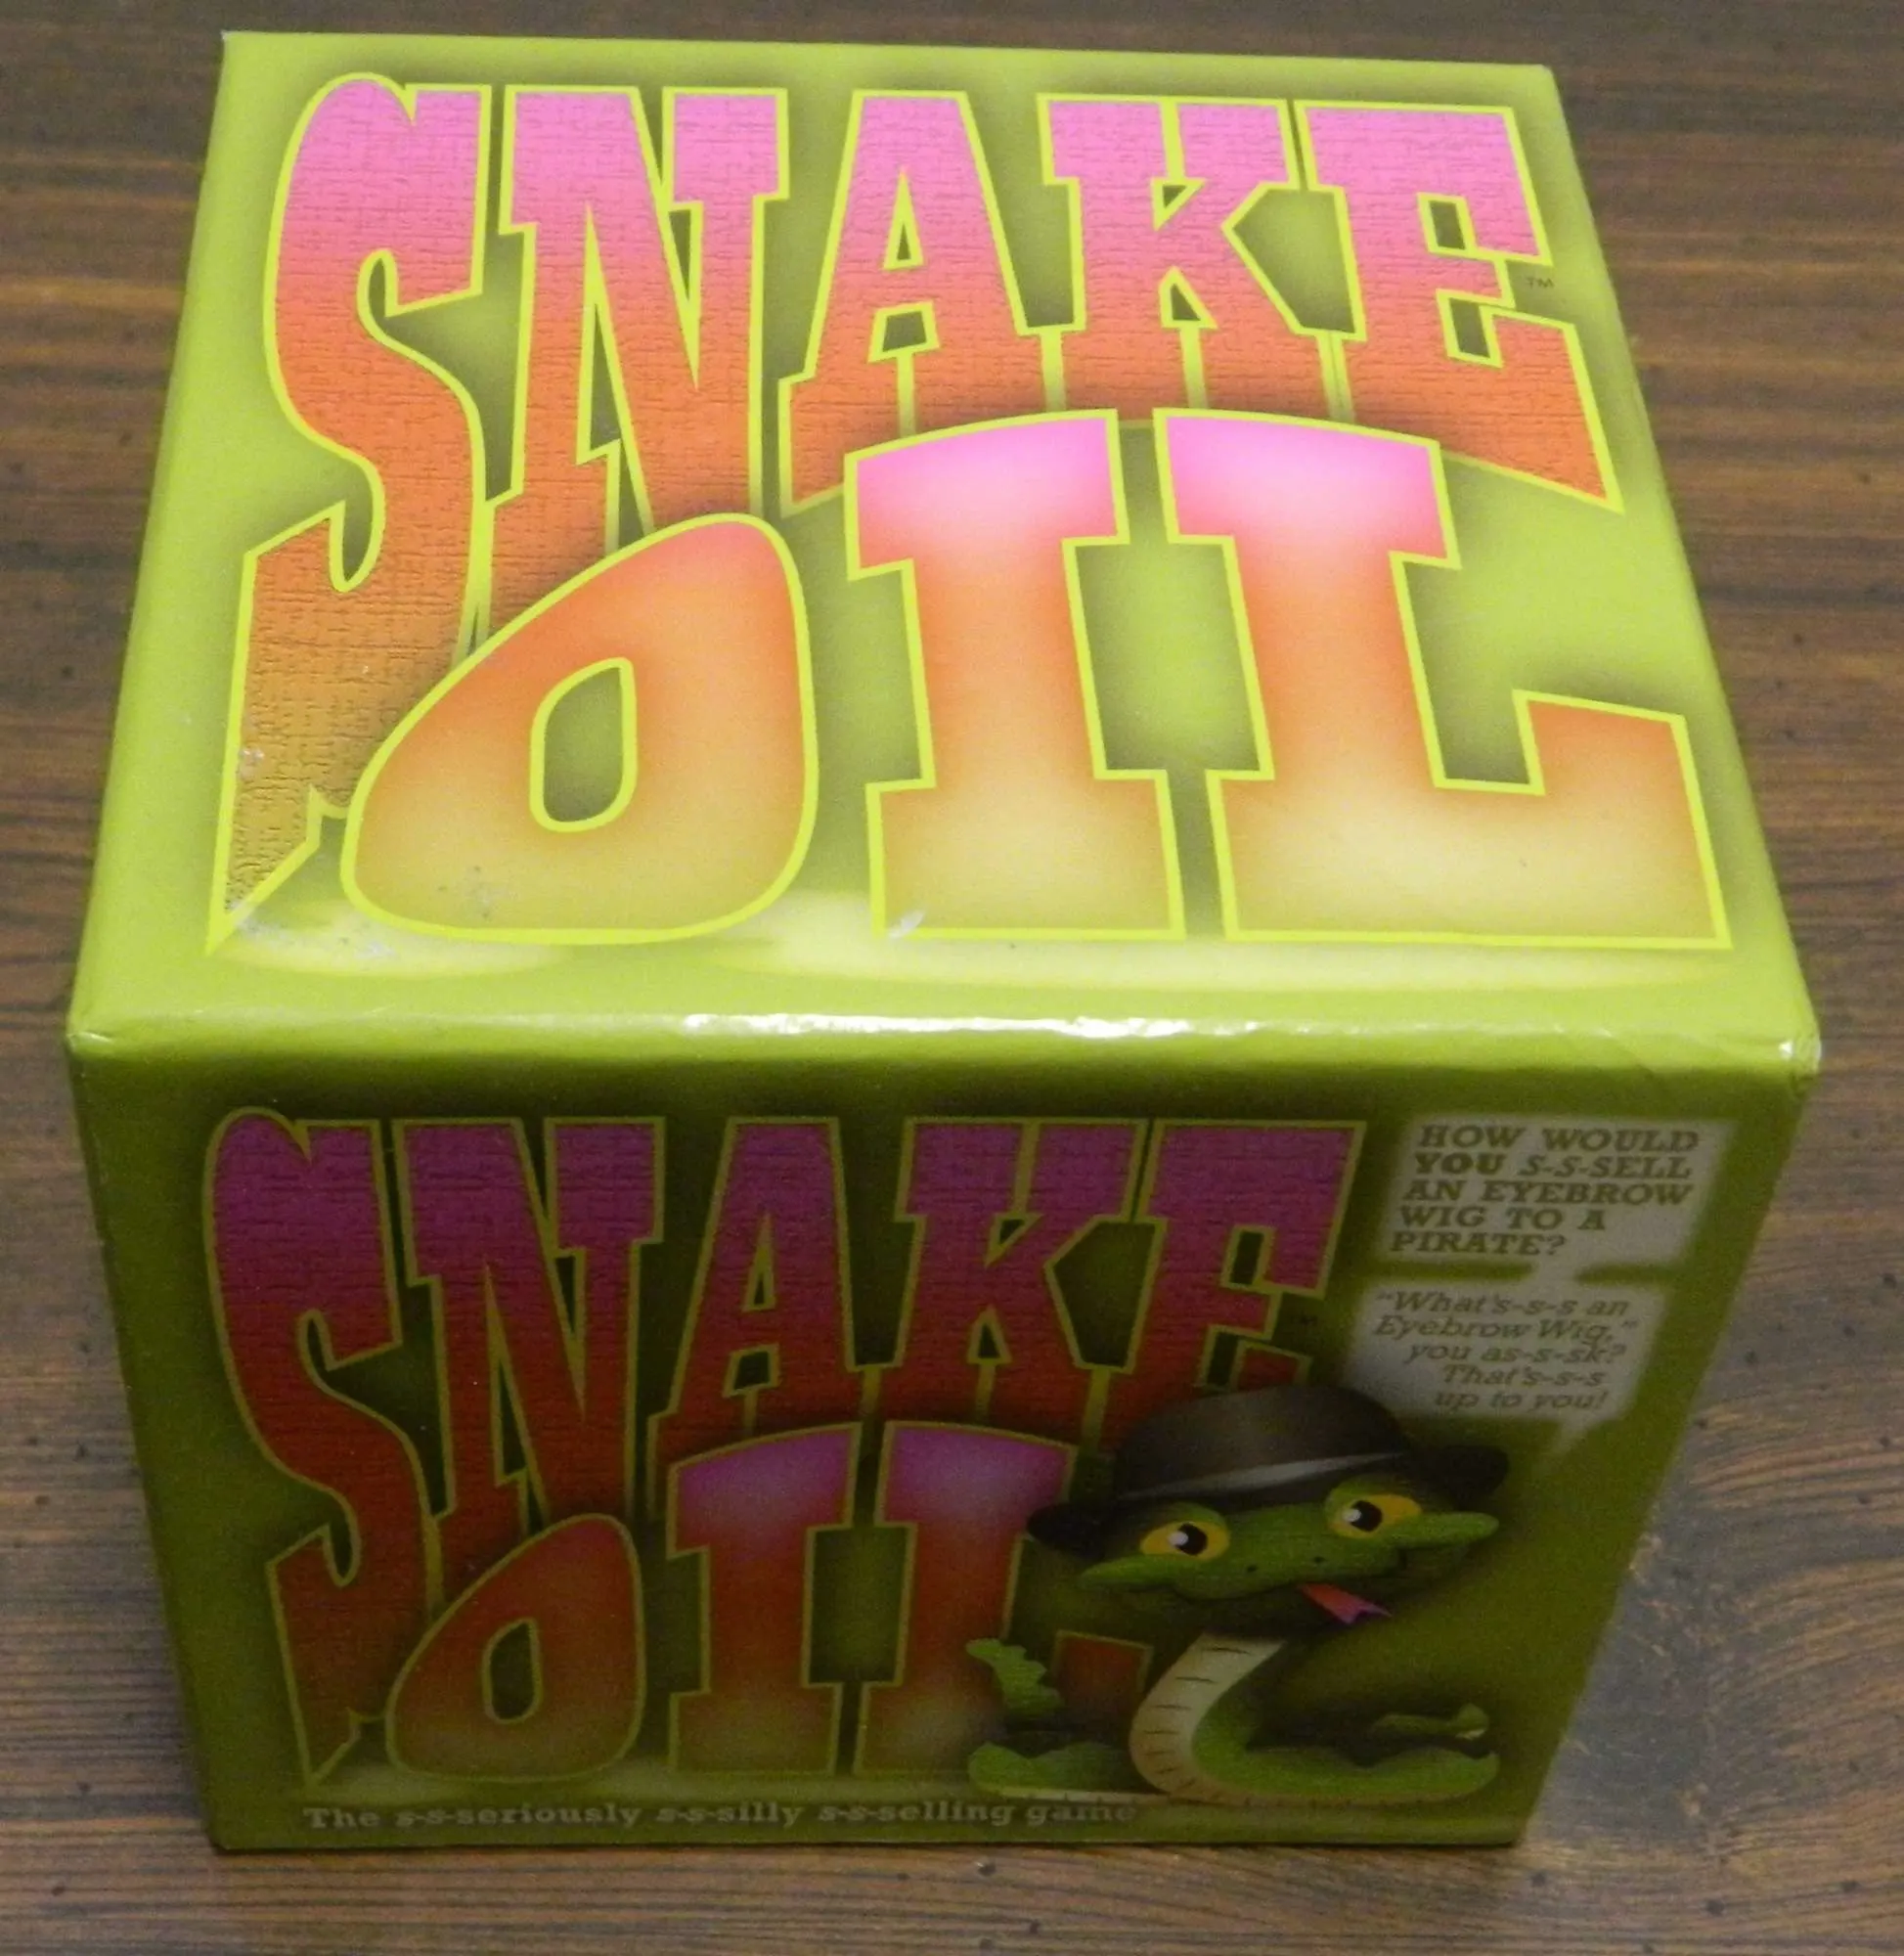 Box for Snake Oil